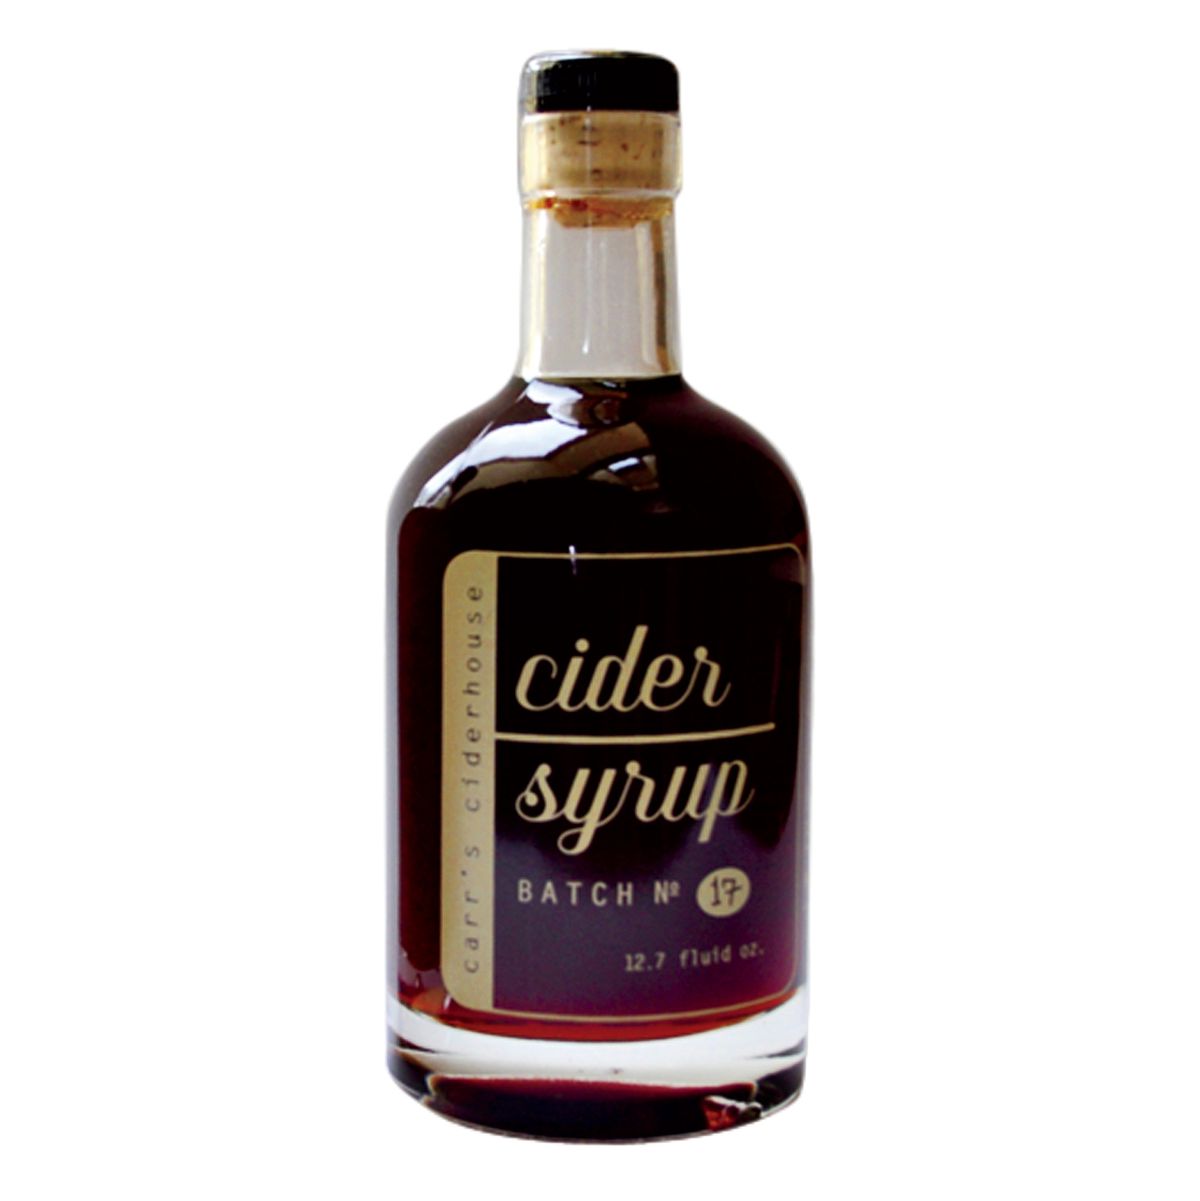 Cider Syrup